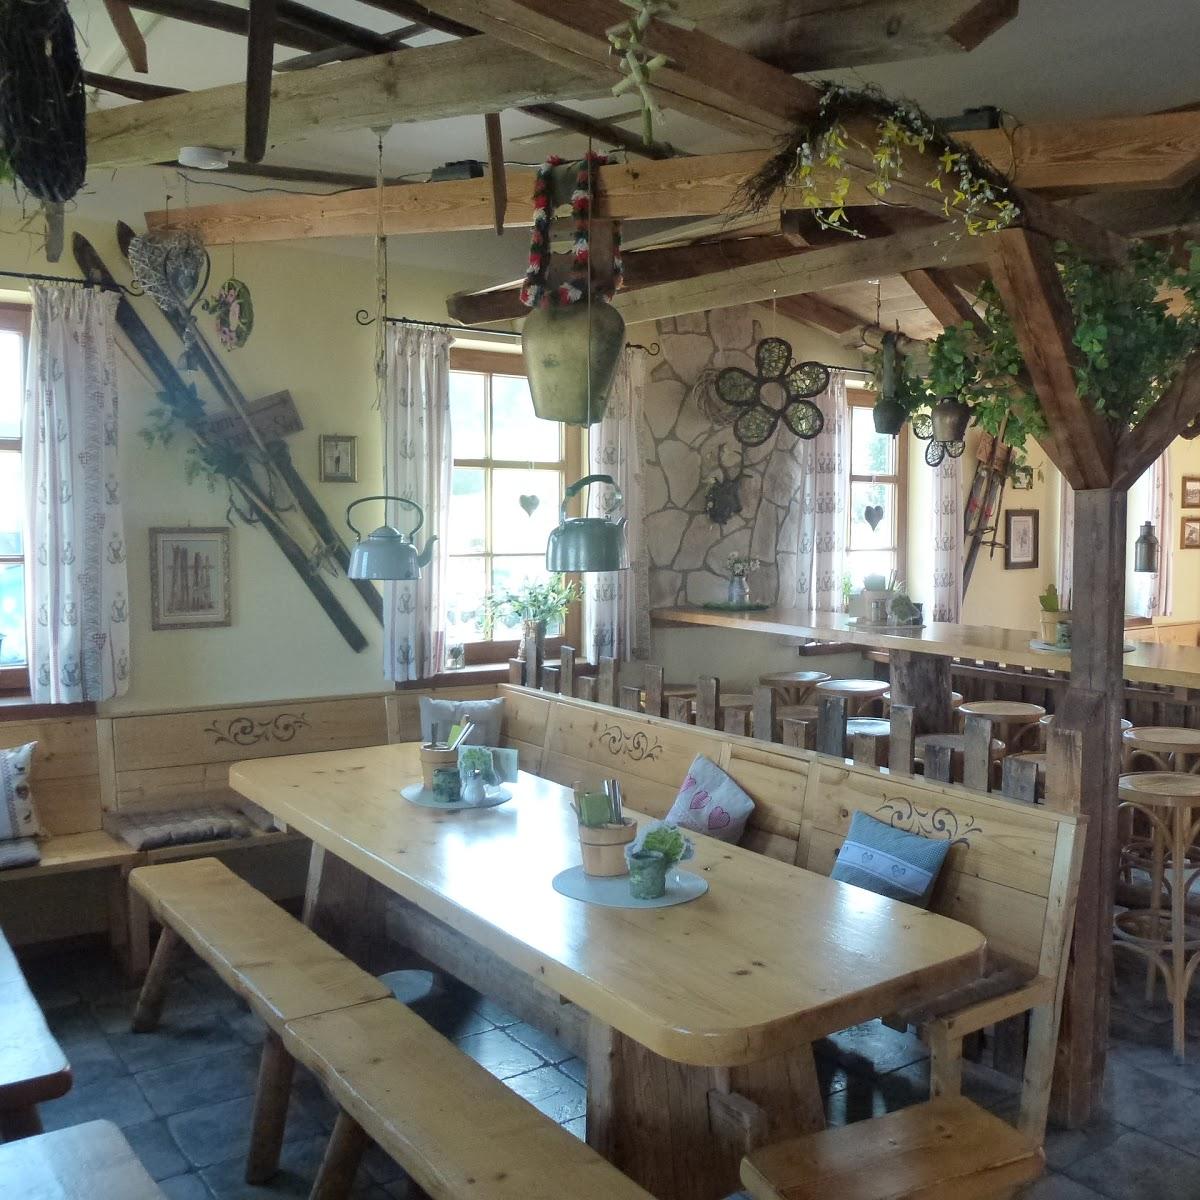 Restaurant "Buron Stadl Gasthof" in Wertach